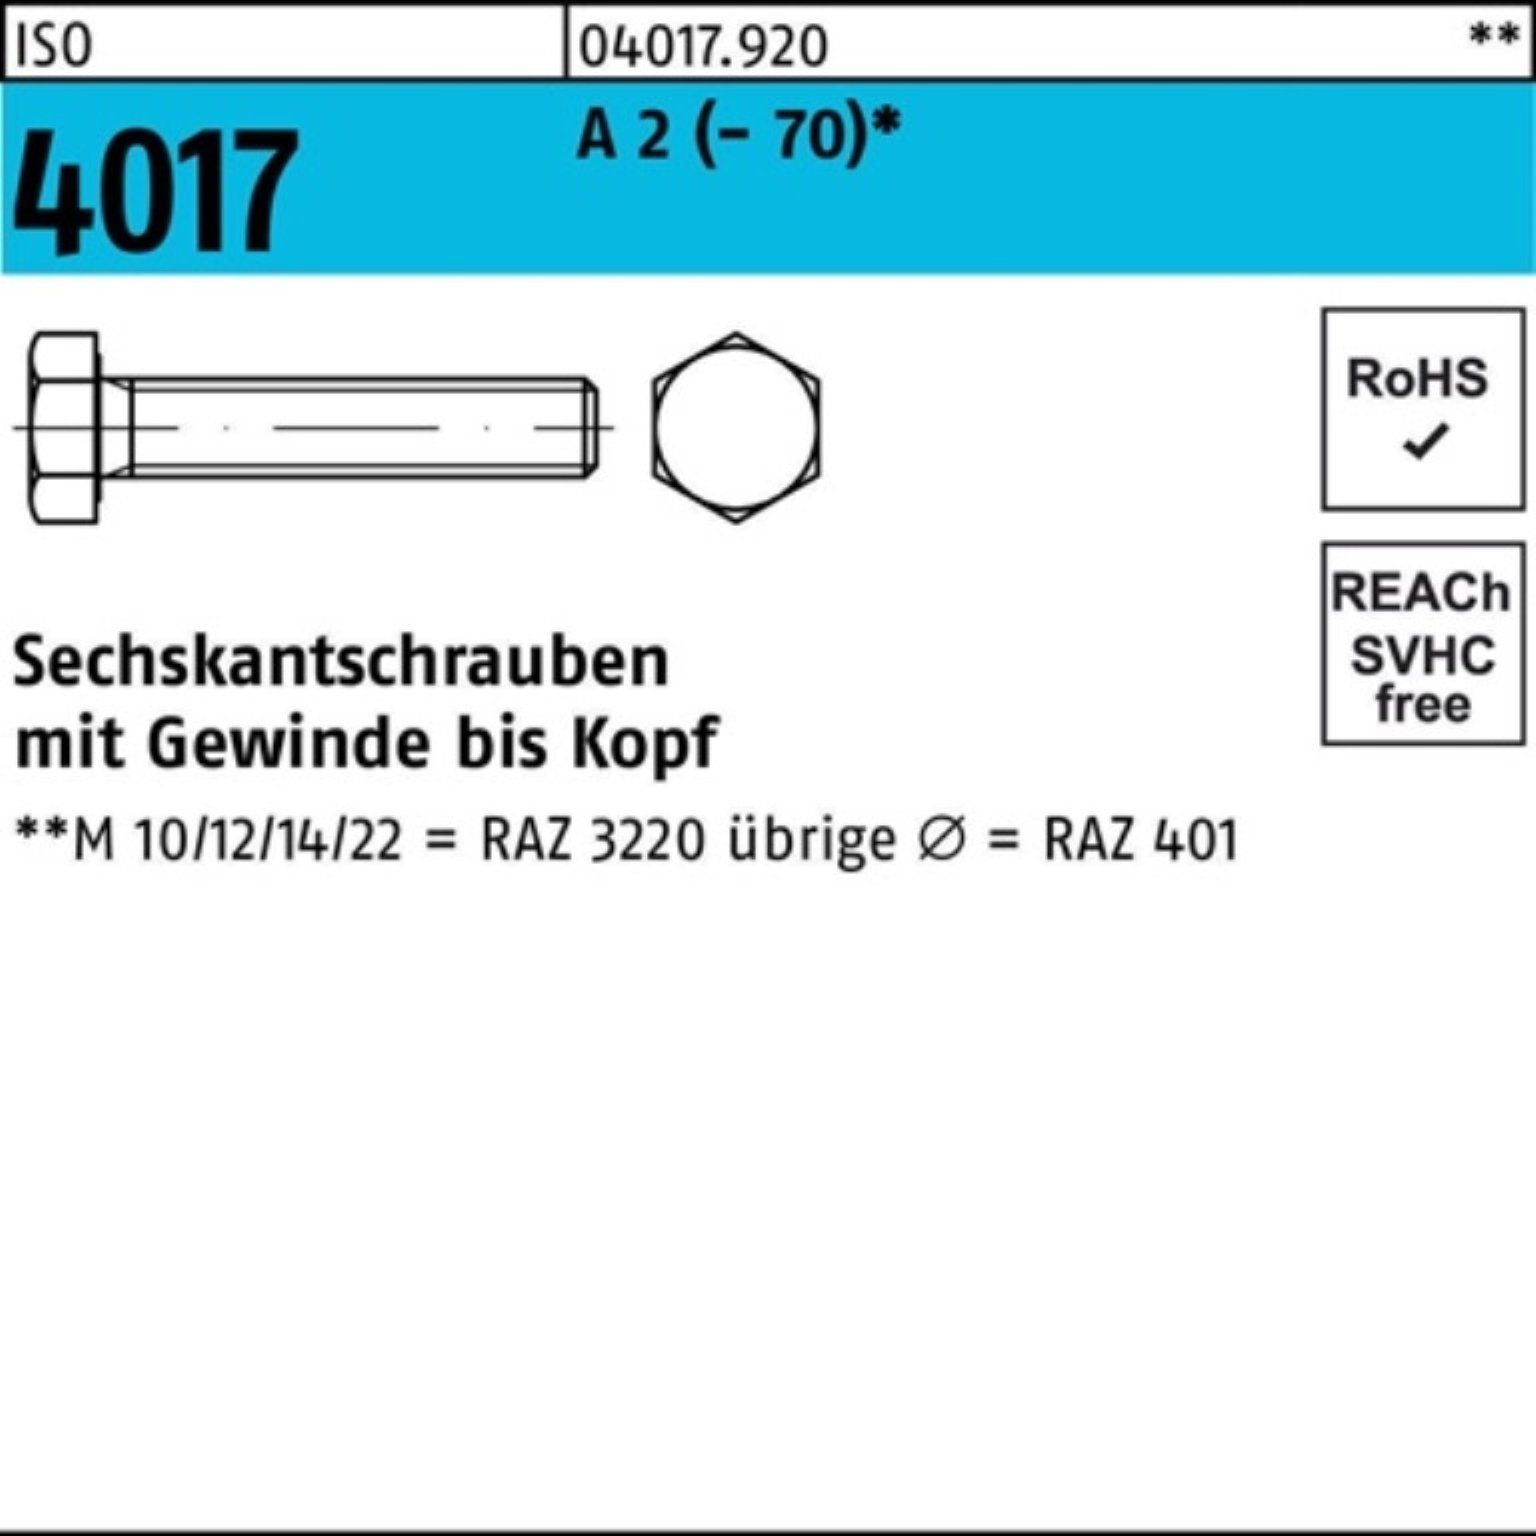 Bufab Sechskantschraube 100er Pack Sechskantschraube ISO 4017 VG M8x 30 A 2 (70) 100 Stück